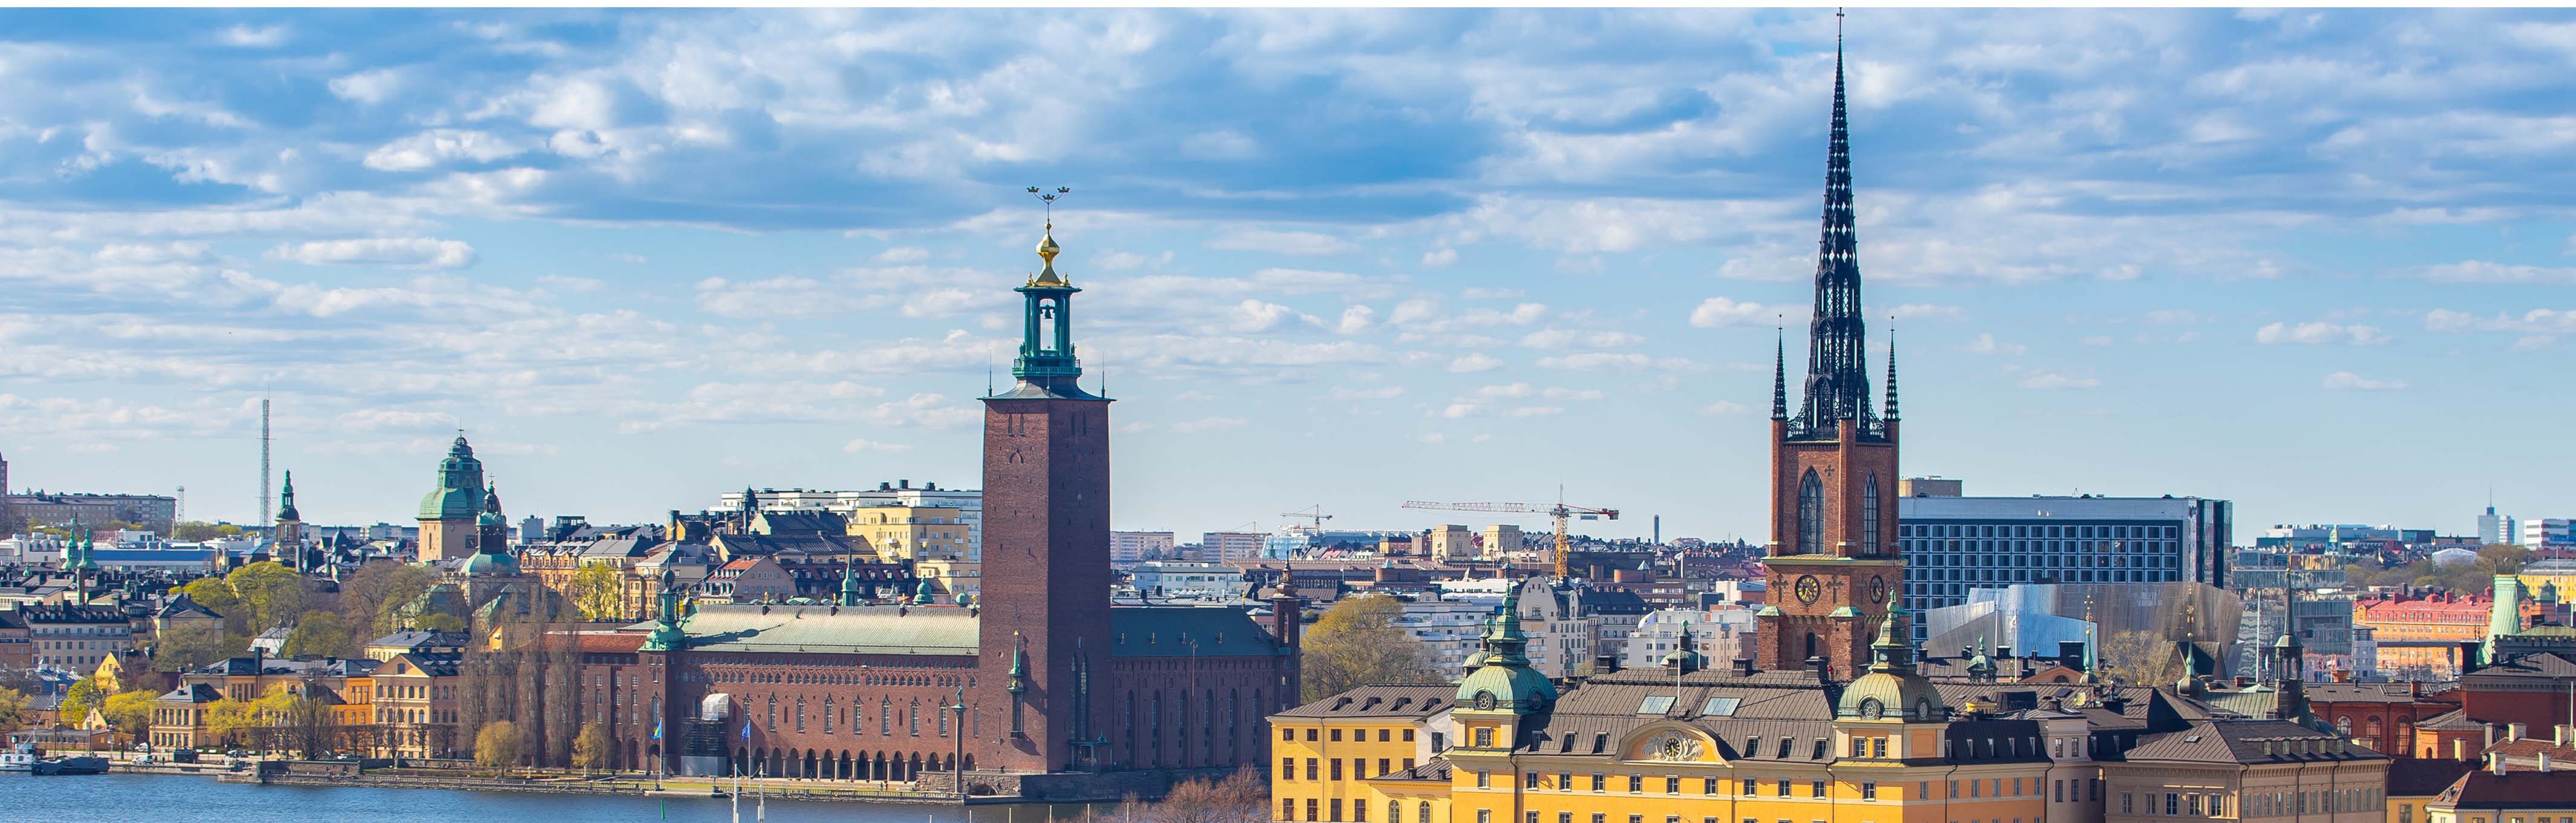 Stockholm - folk och moské